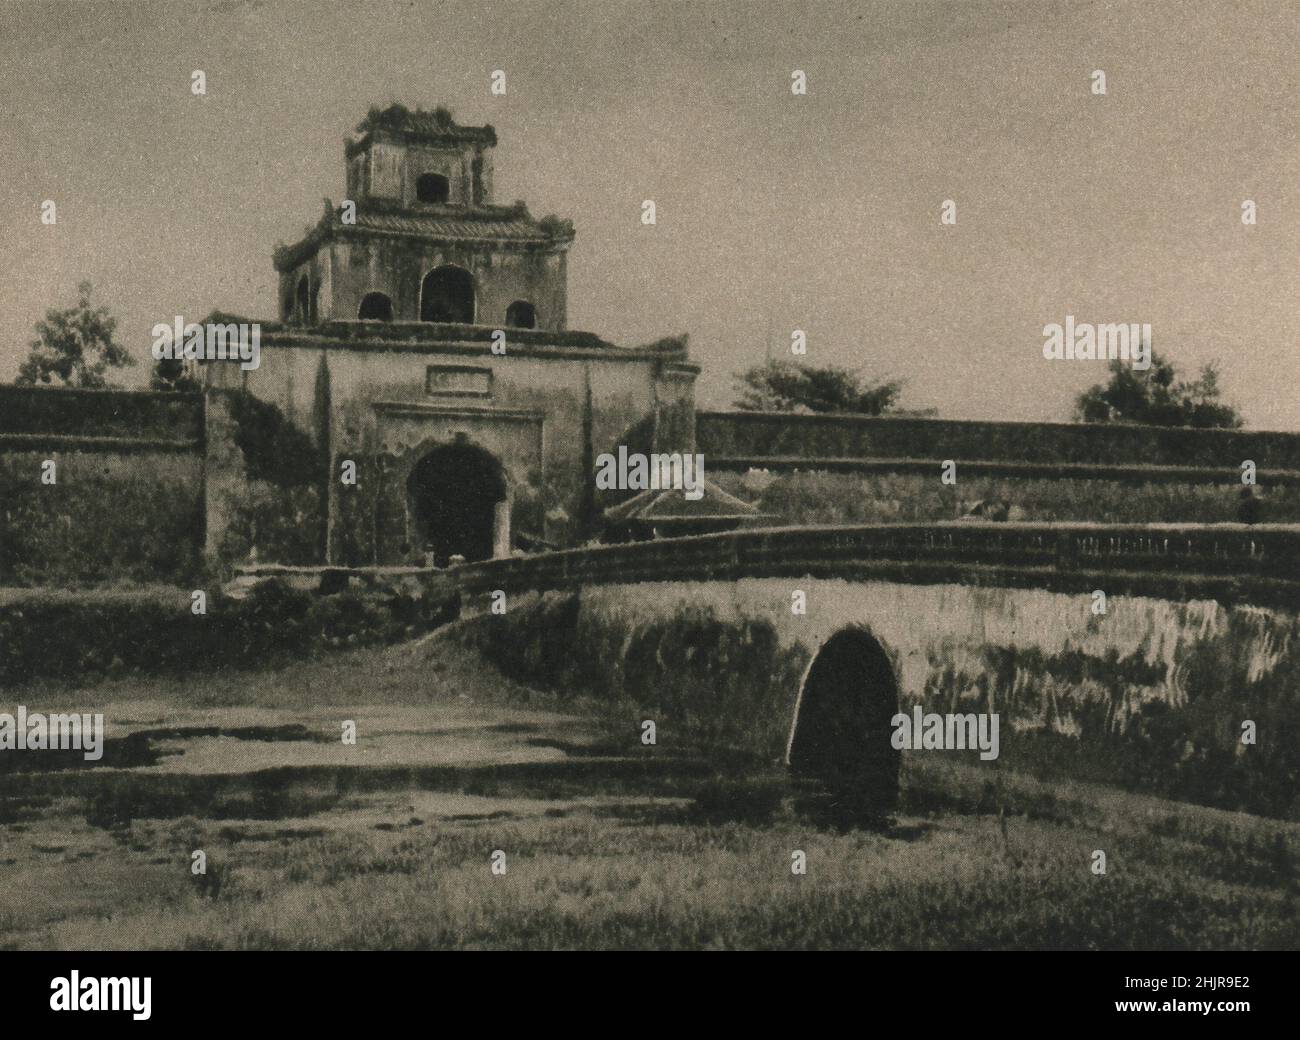 La ciudadela de Hué tiene el río en tres lados y un canal defiende el cuarto. Cerca están las tumbas de los gobernantes de Annam antiguo. Vietnam (1923) Foto de stock